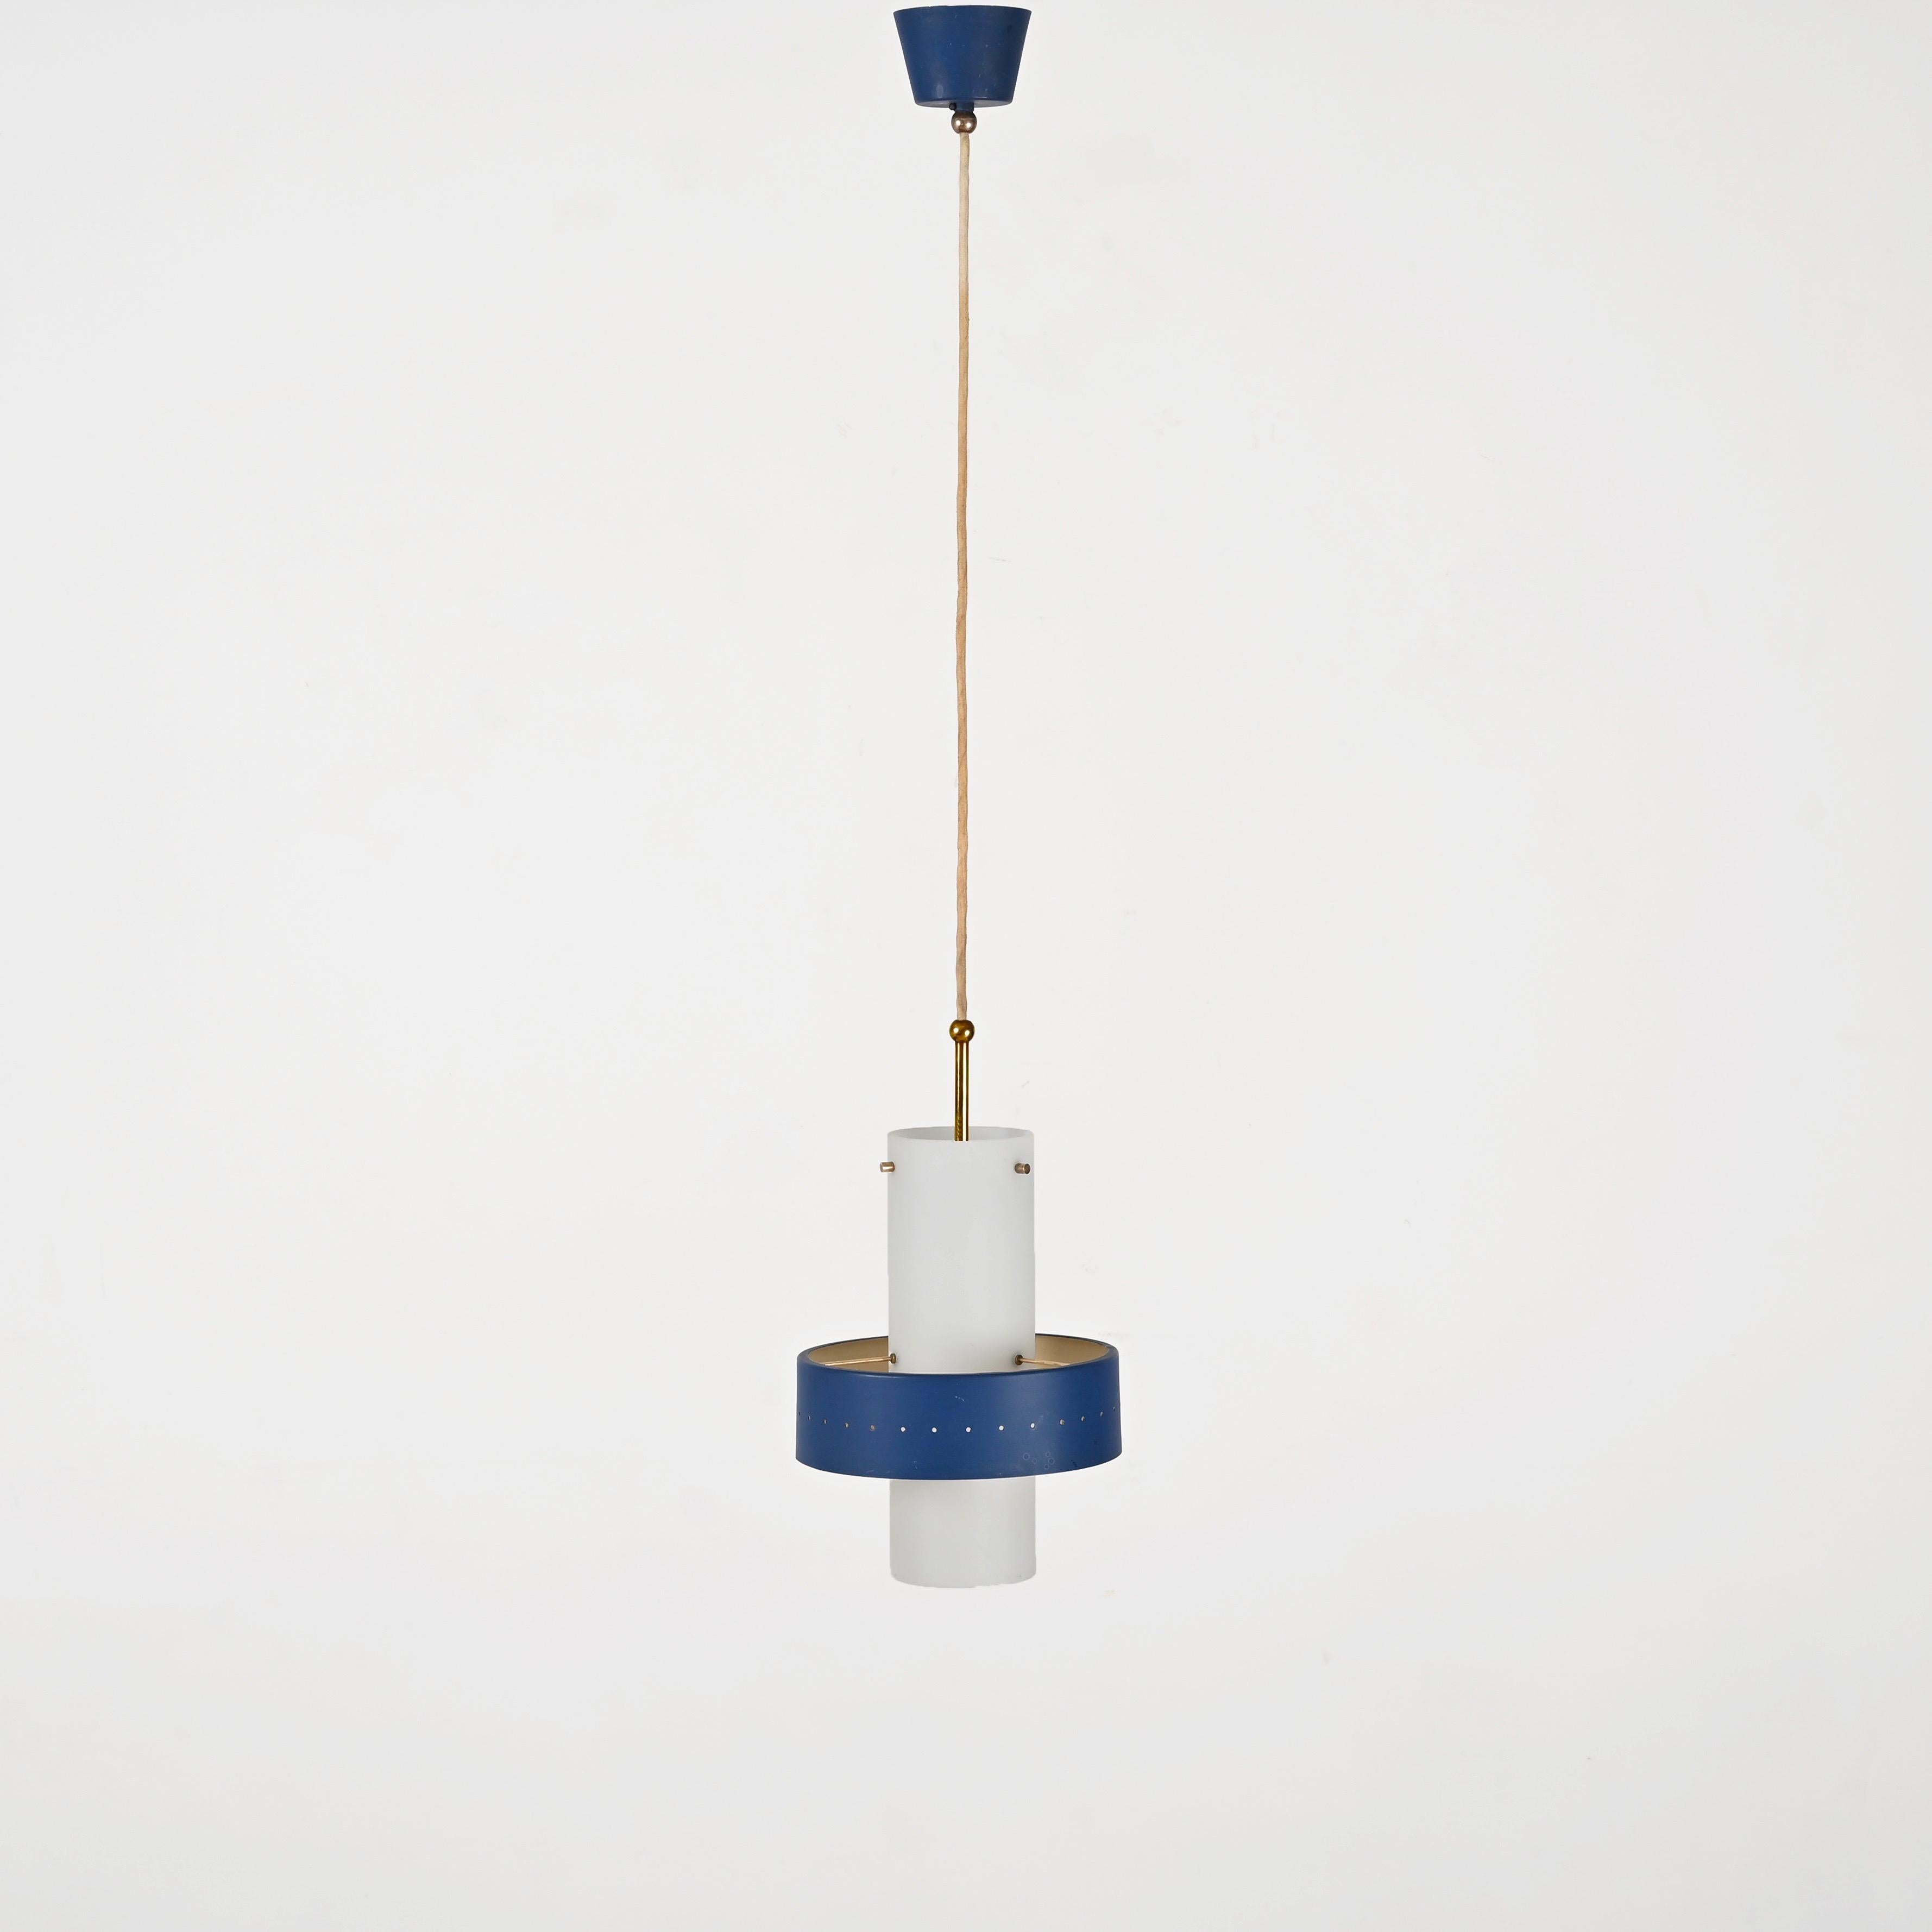 Stilnovo Opal Glass, Brass and Blue Metal Pendant Lamp, Italian Lighting 1950s For Sale 3